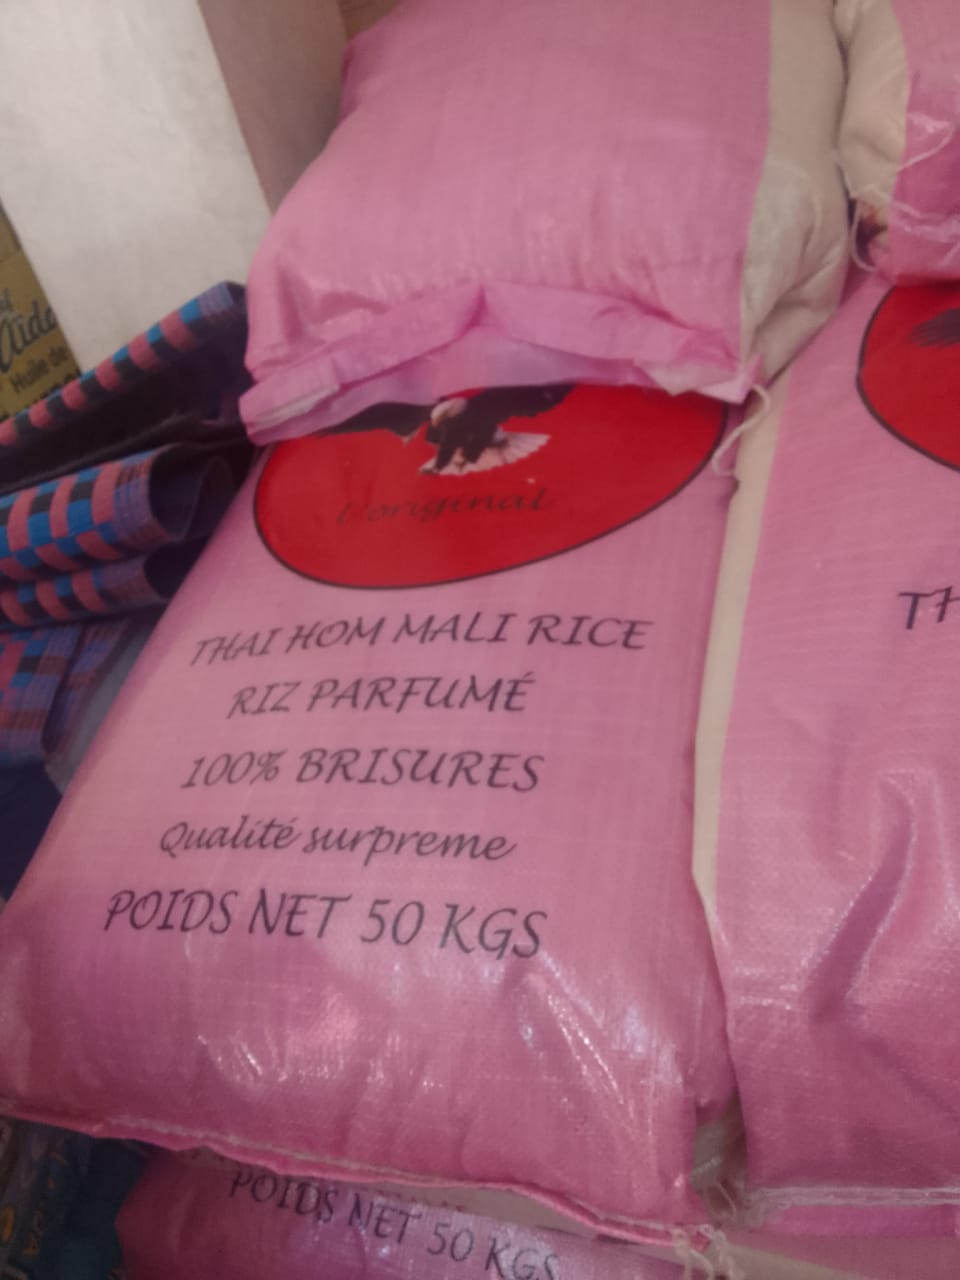 SACS DE RIZ PARFUMES DE 50 KG SENTOL SUARL vous propose des sacs de riz  parfumés de 50 kg de très bonne qualité à des prix abordables

Prix en gros

La livraison possible

faite vite vos commandes
Pour plus d